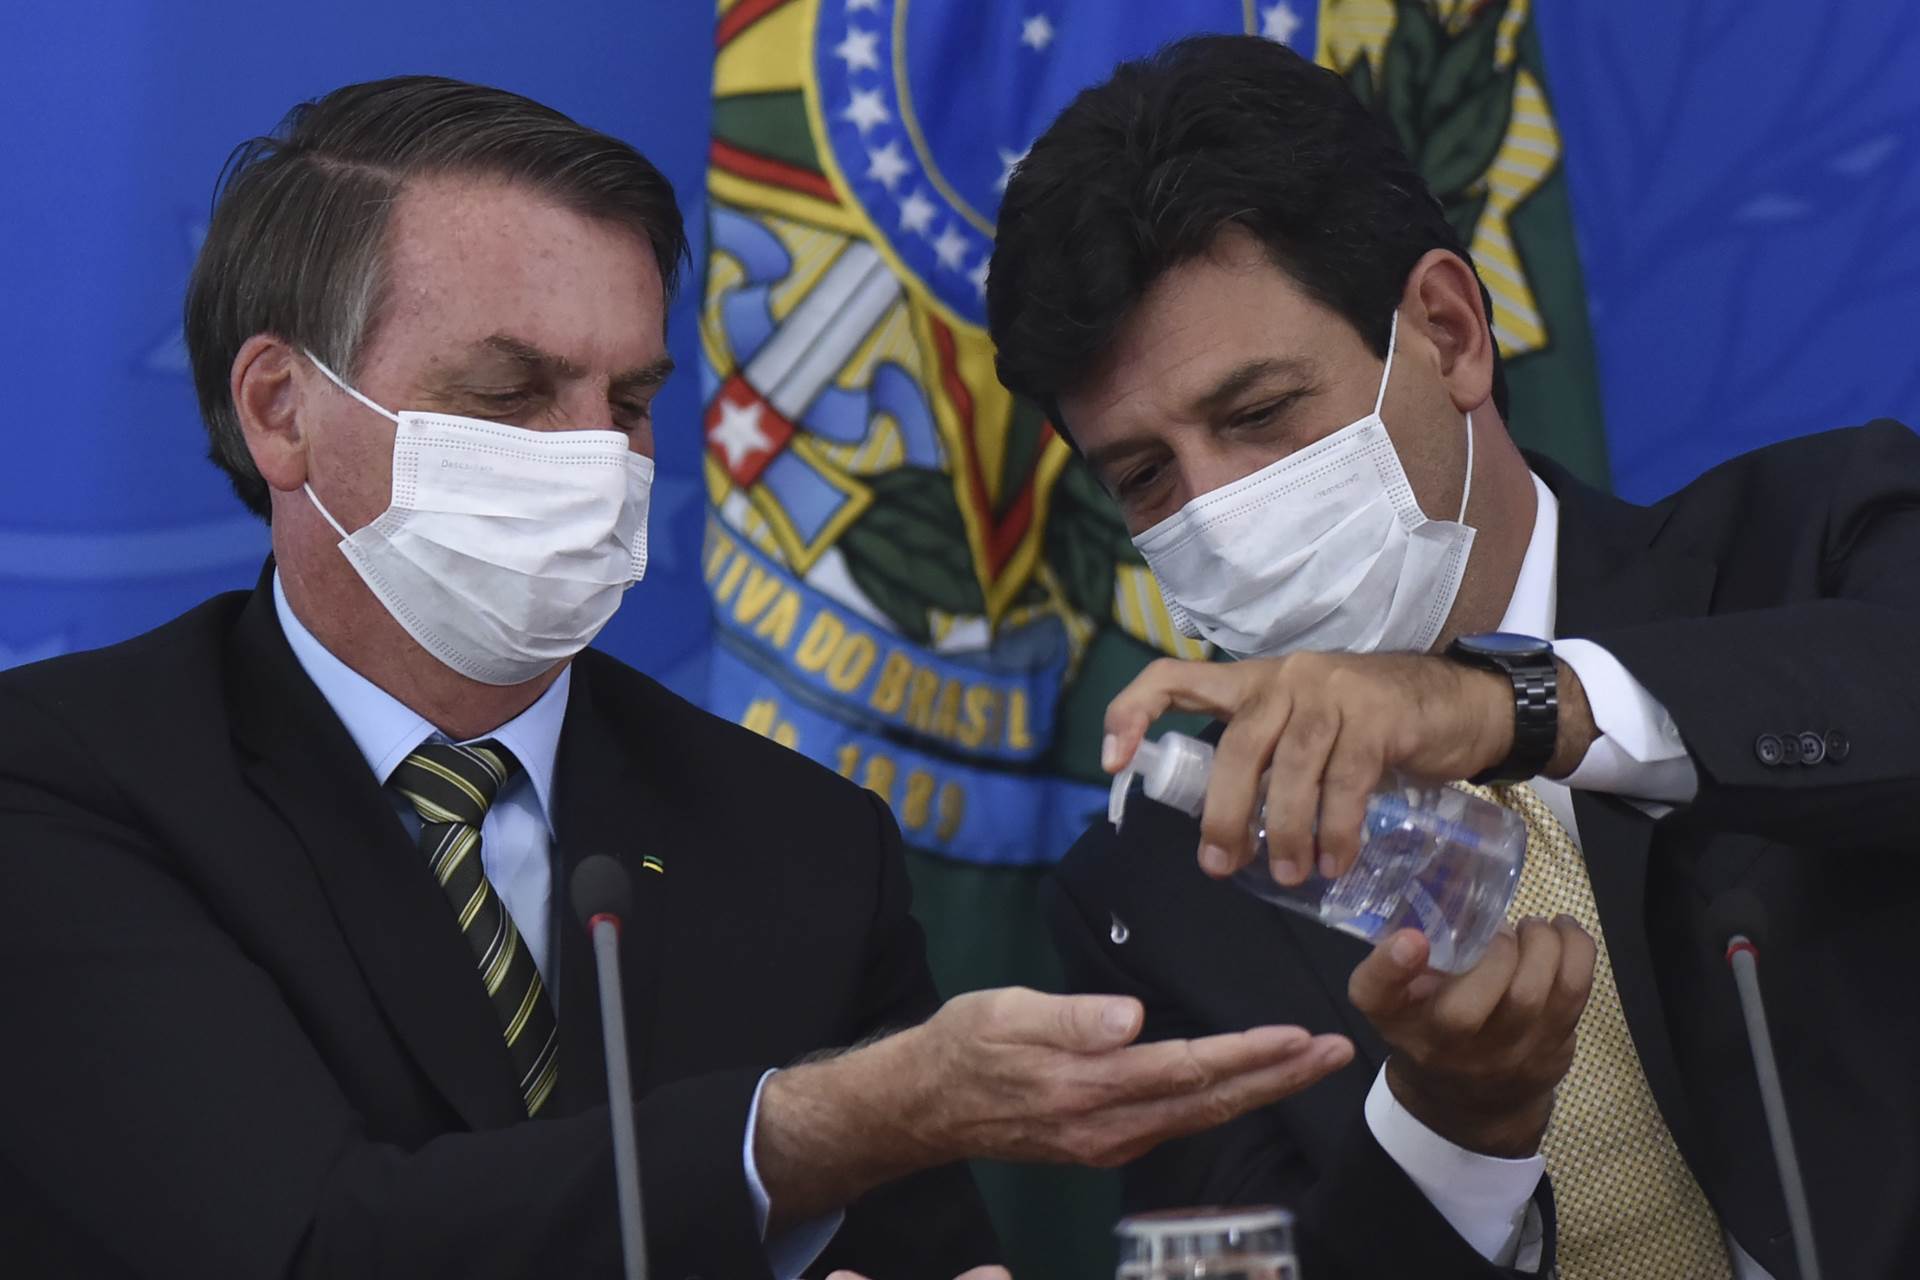  Protiv korone ŠERPAMA I LONCIMA: Brazilci bučno kritikuju Bolsonara 